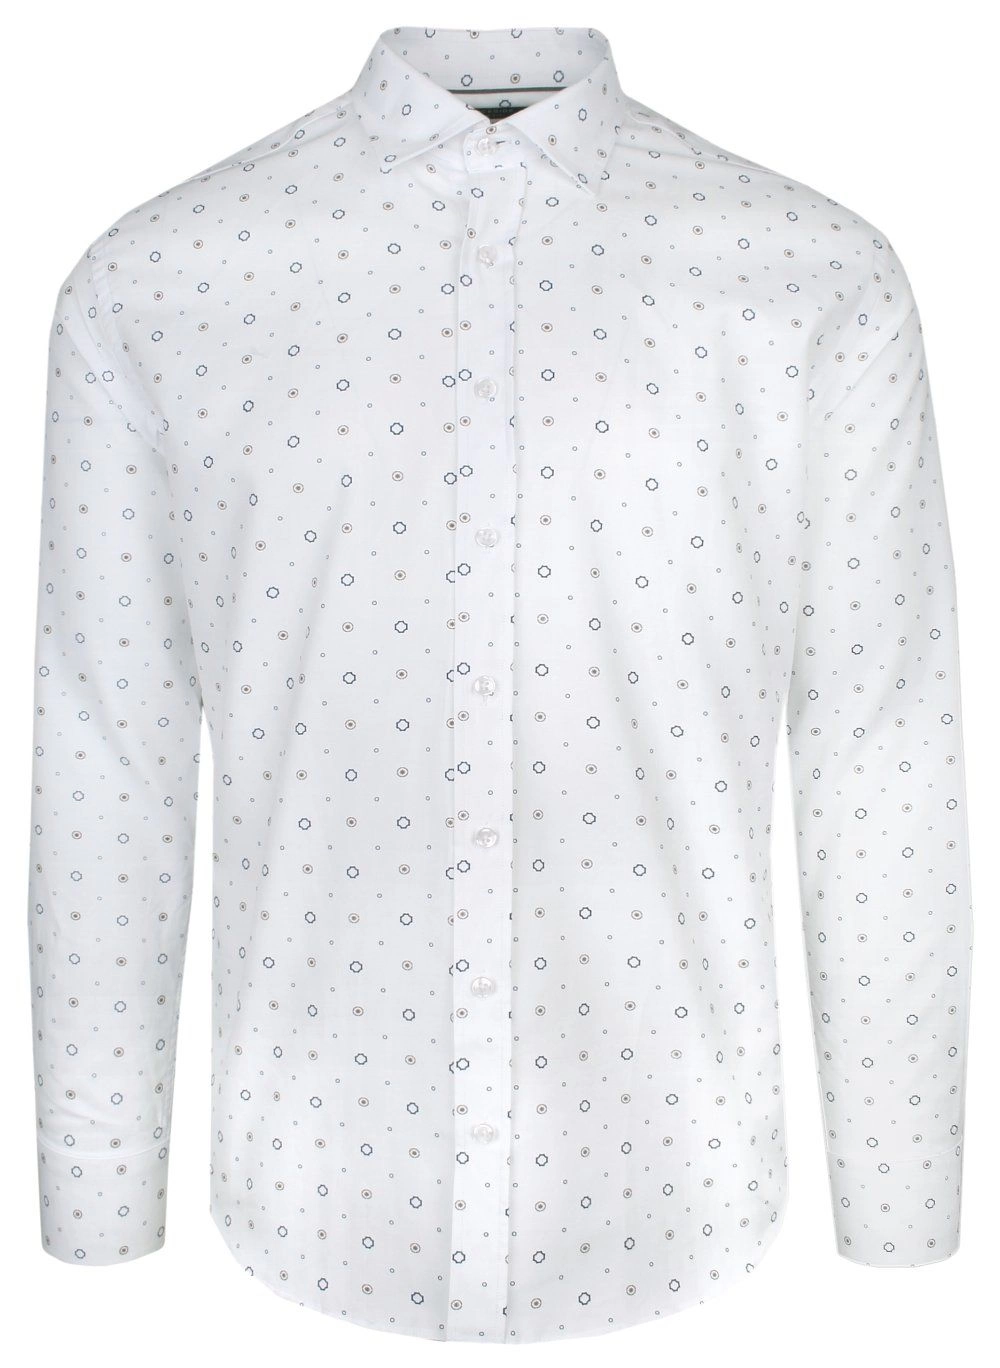 Koszula Bawełniana Biała w Geometryczny Wzór Brązowo-Granatowy, Taliowana, Długi Rękaw -QUICKSIDE